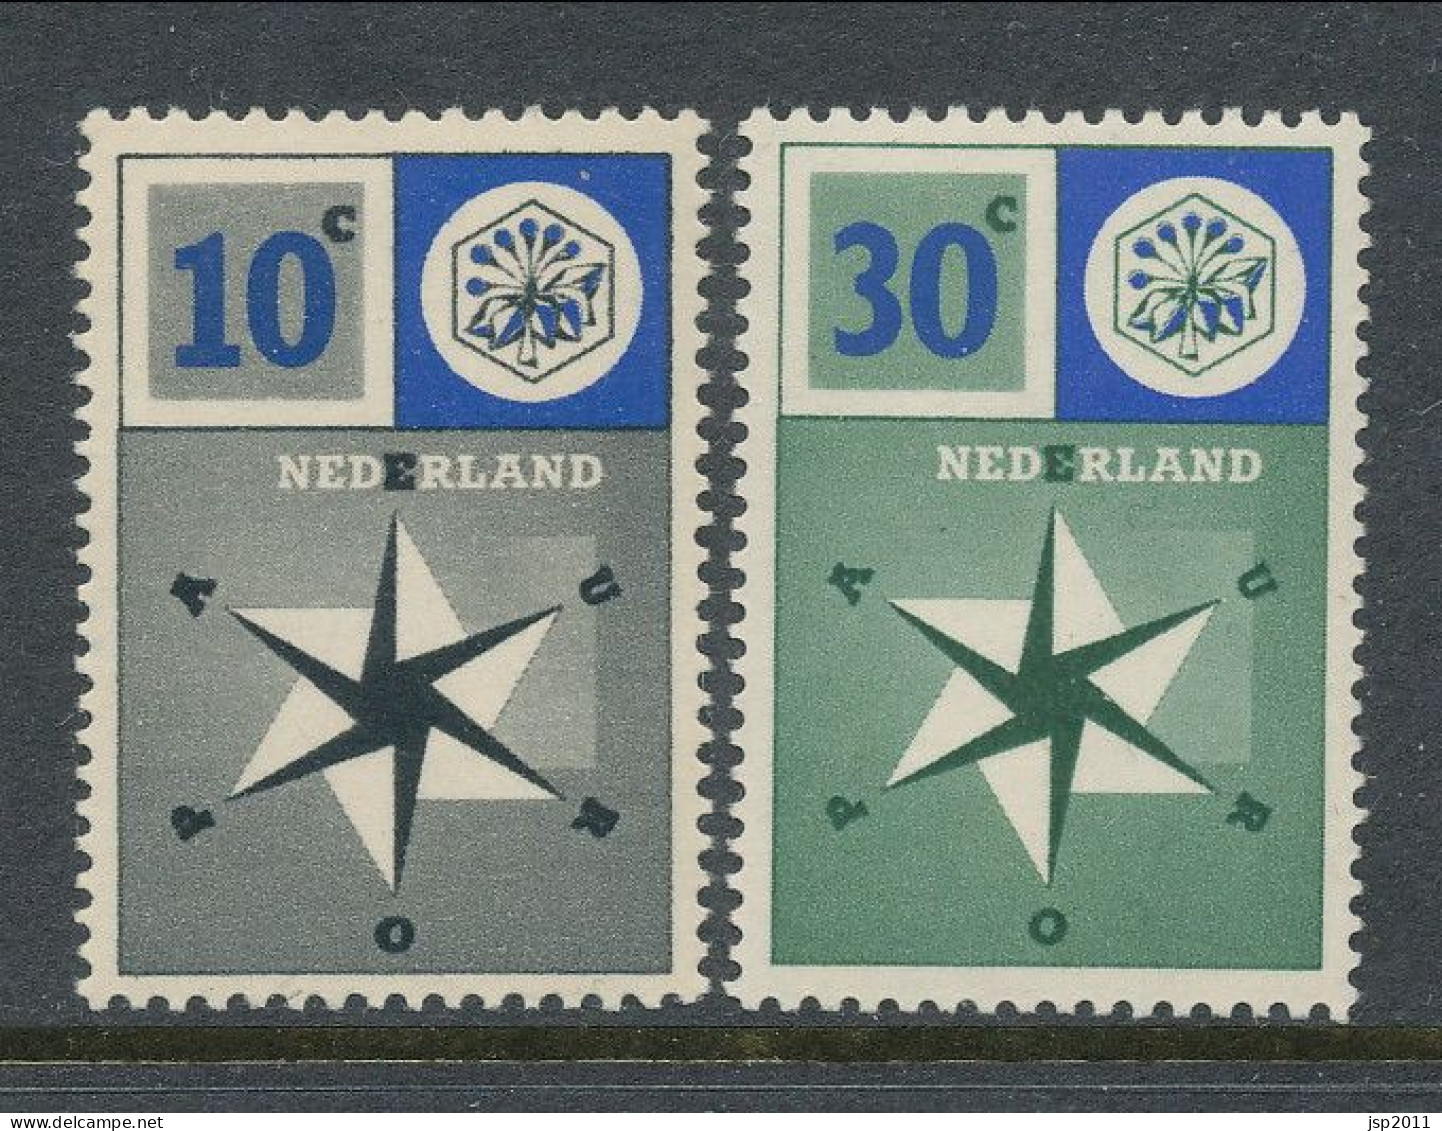 Europa CEPT 1957,  Netherlands, MNH** - 1957